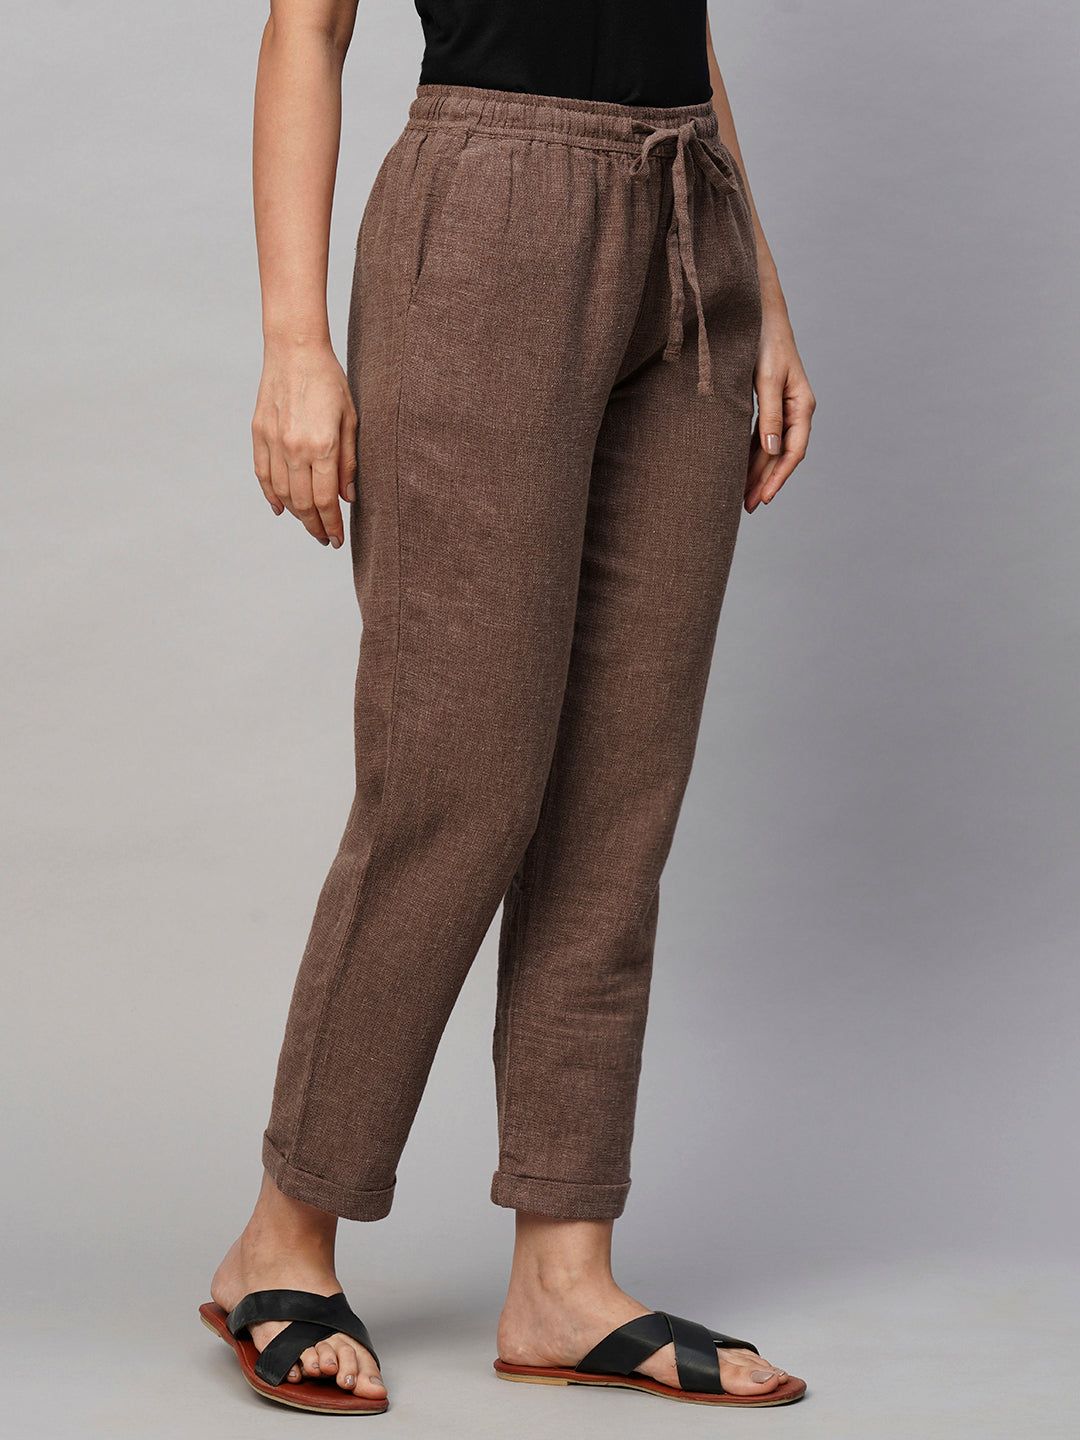 brown linen pants outfit casual  Linen pants women Brown linen pants  Outfit inspiration women